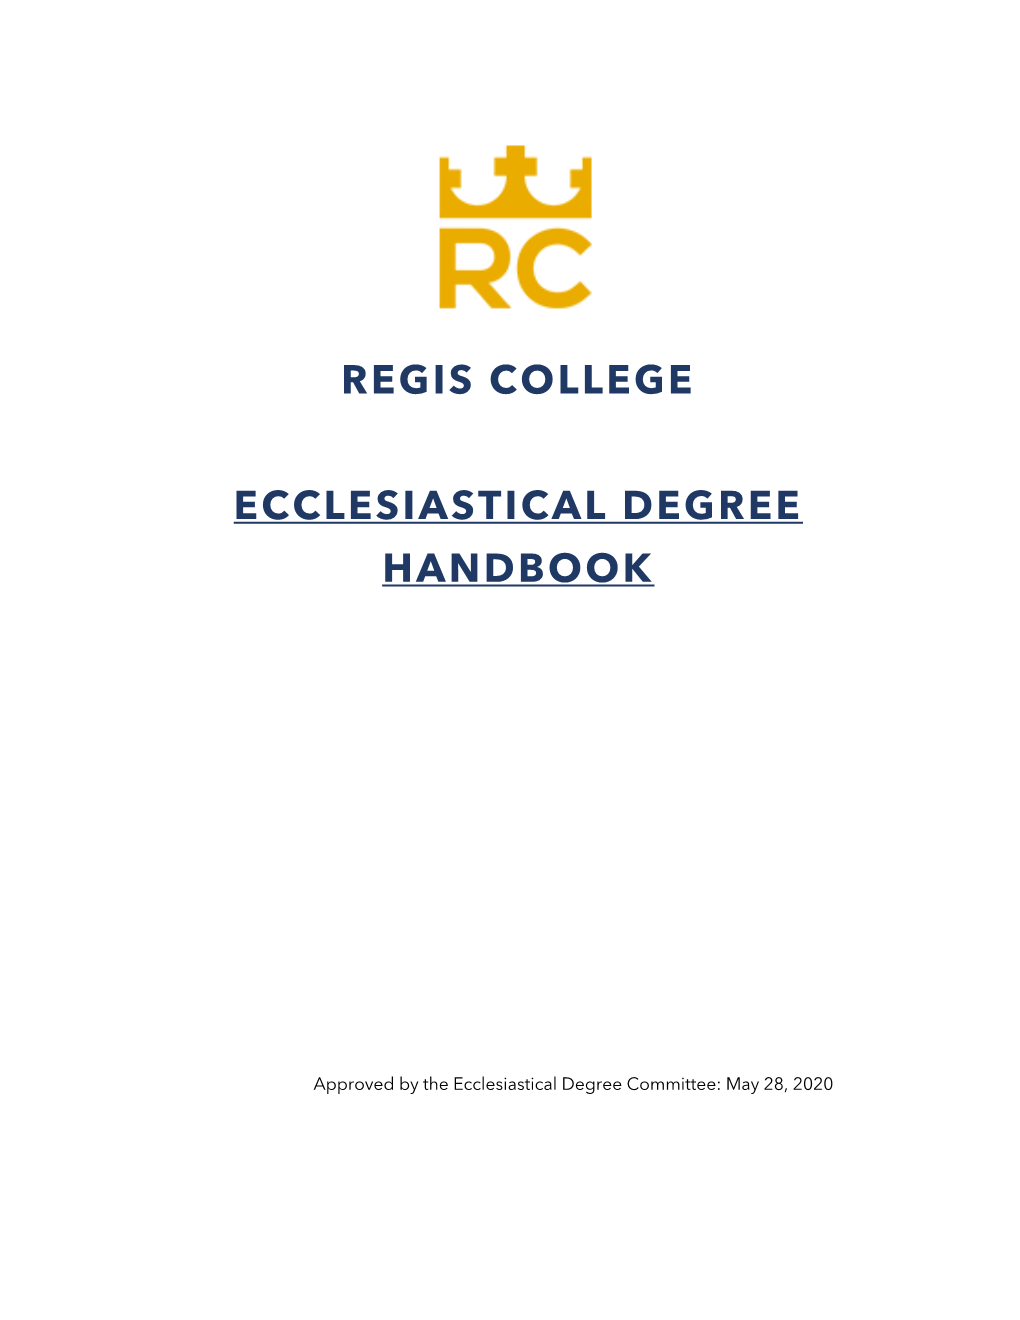 Regis College Ecclesiastical Degree Handbook